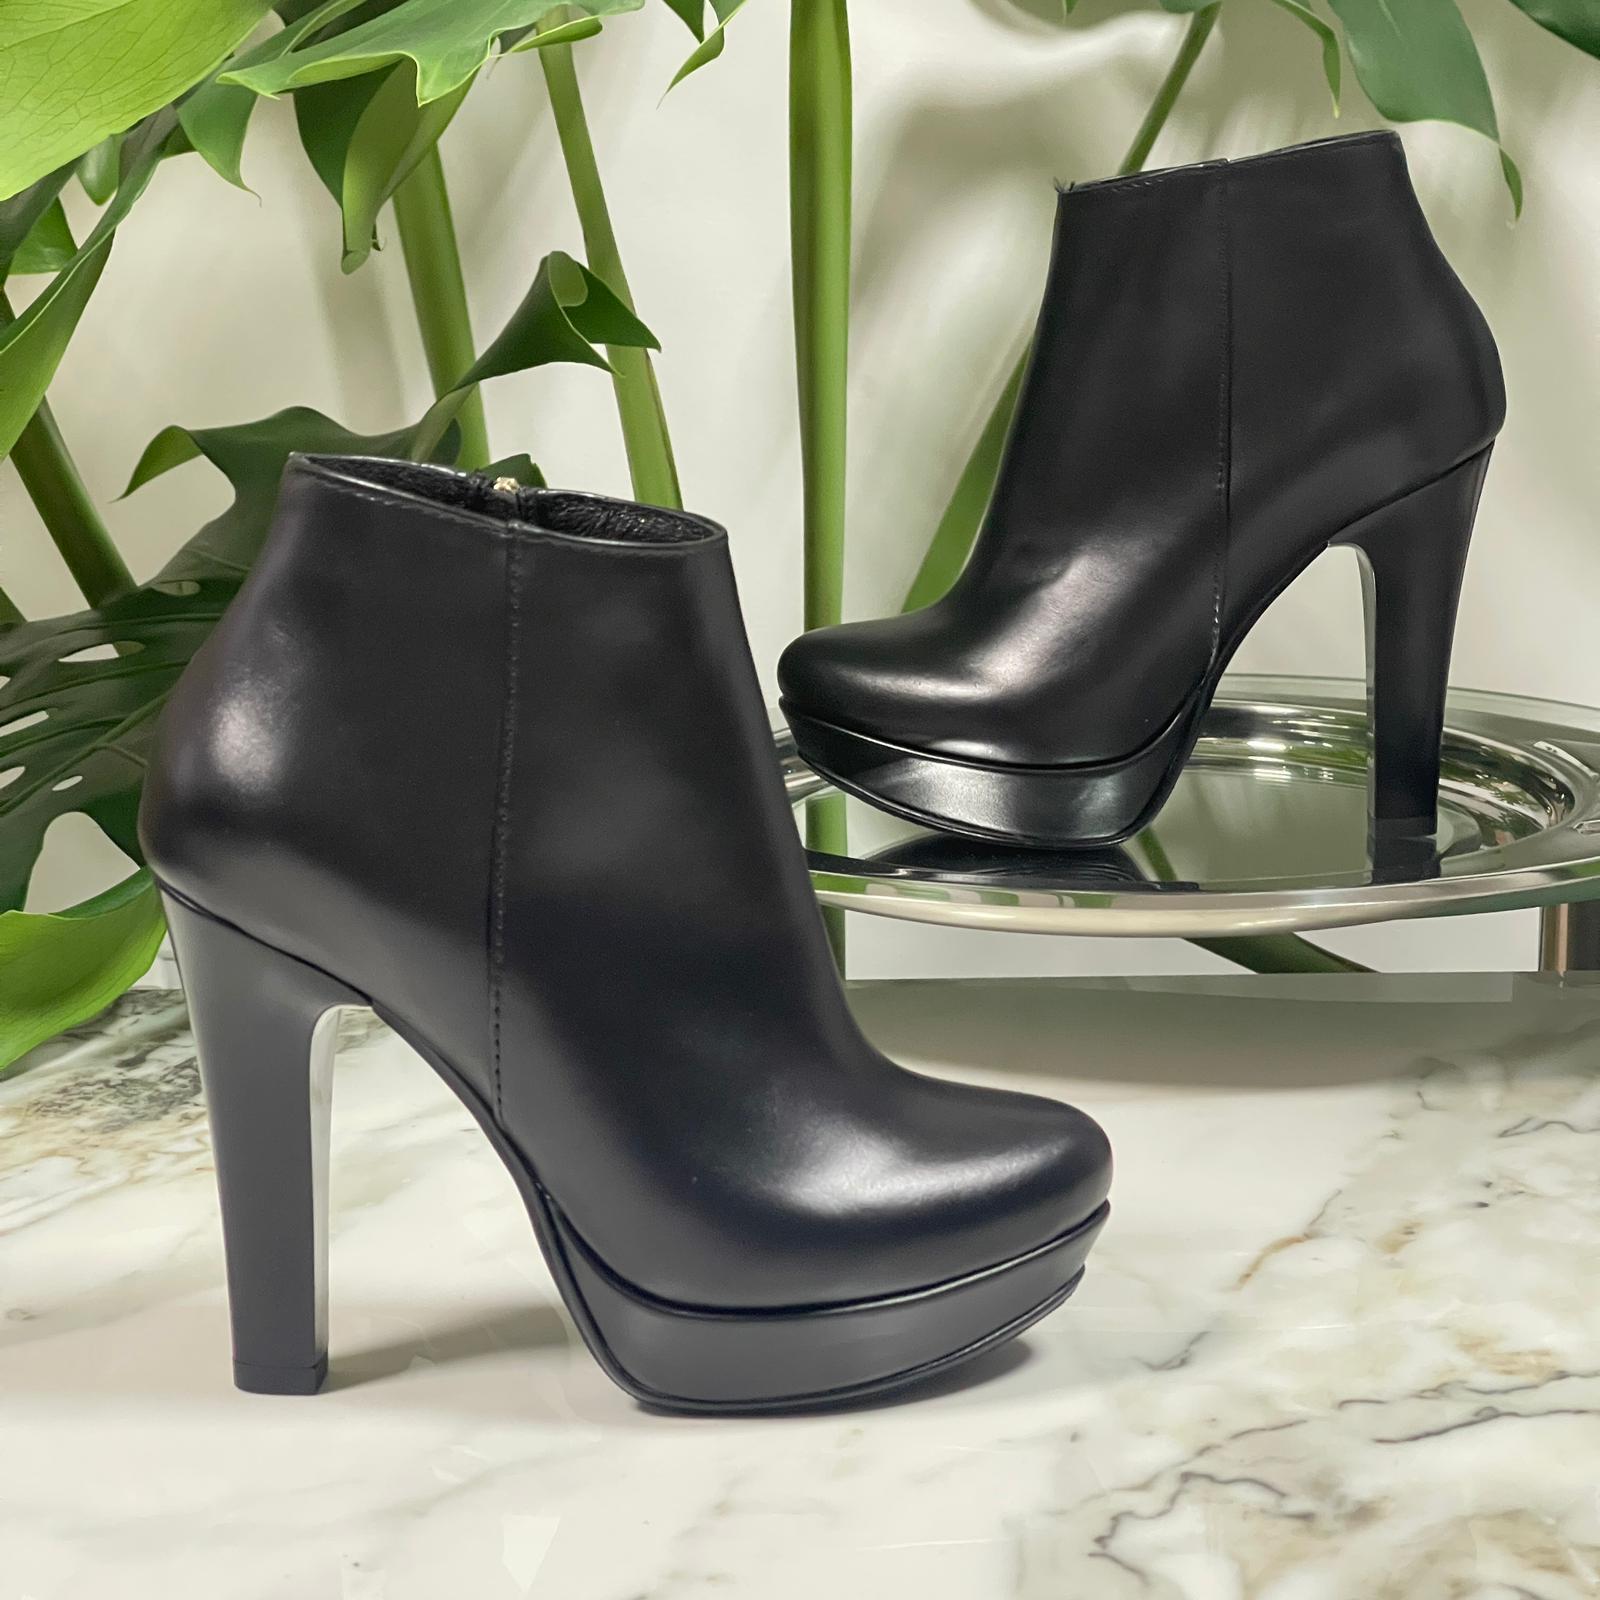 Block heel platform boots in black leather